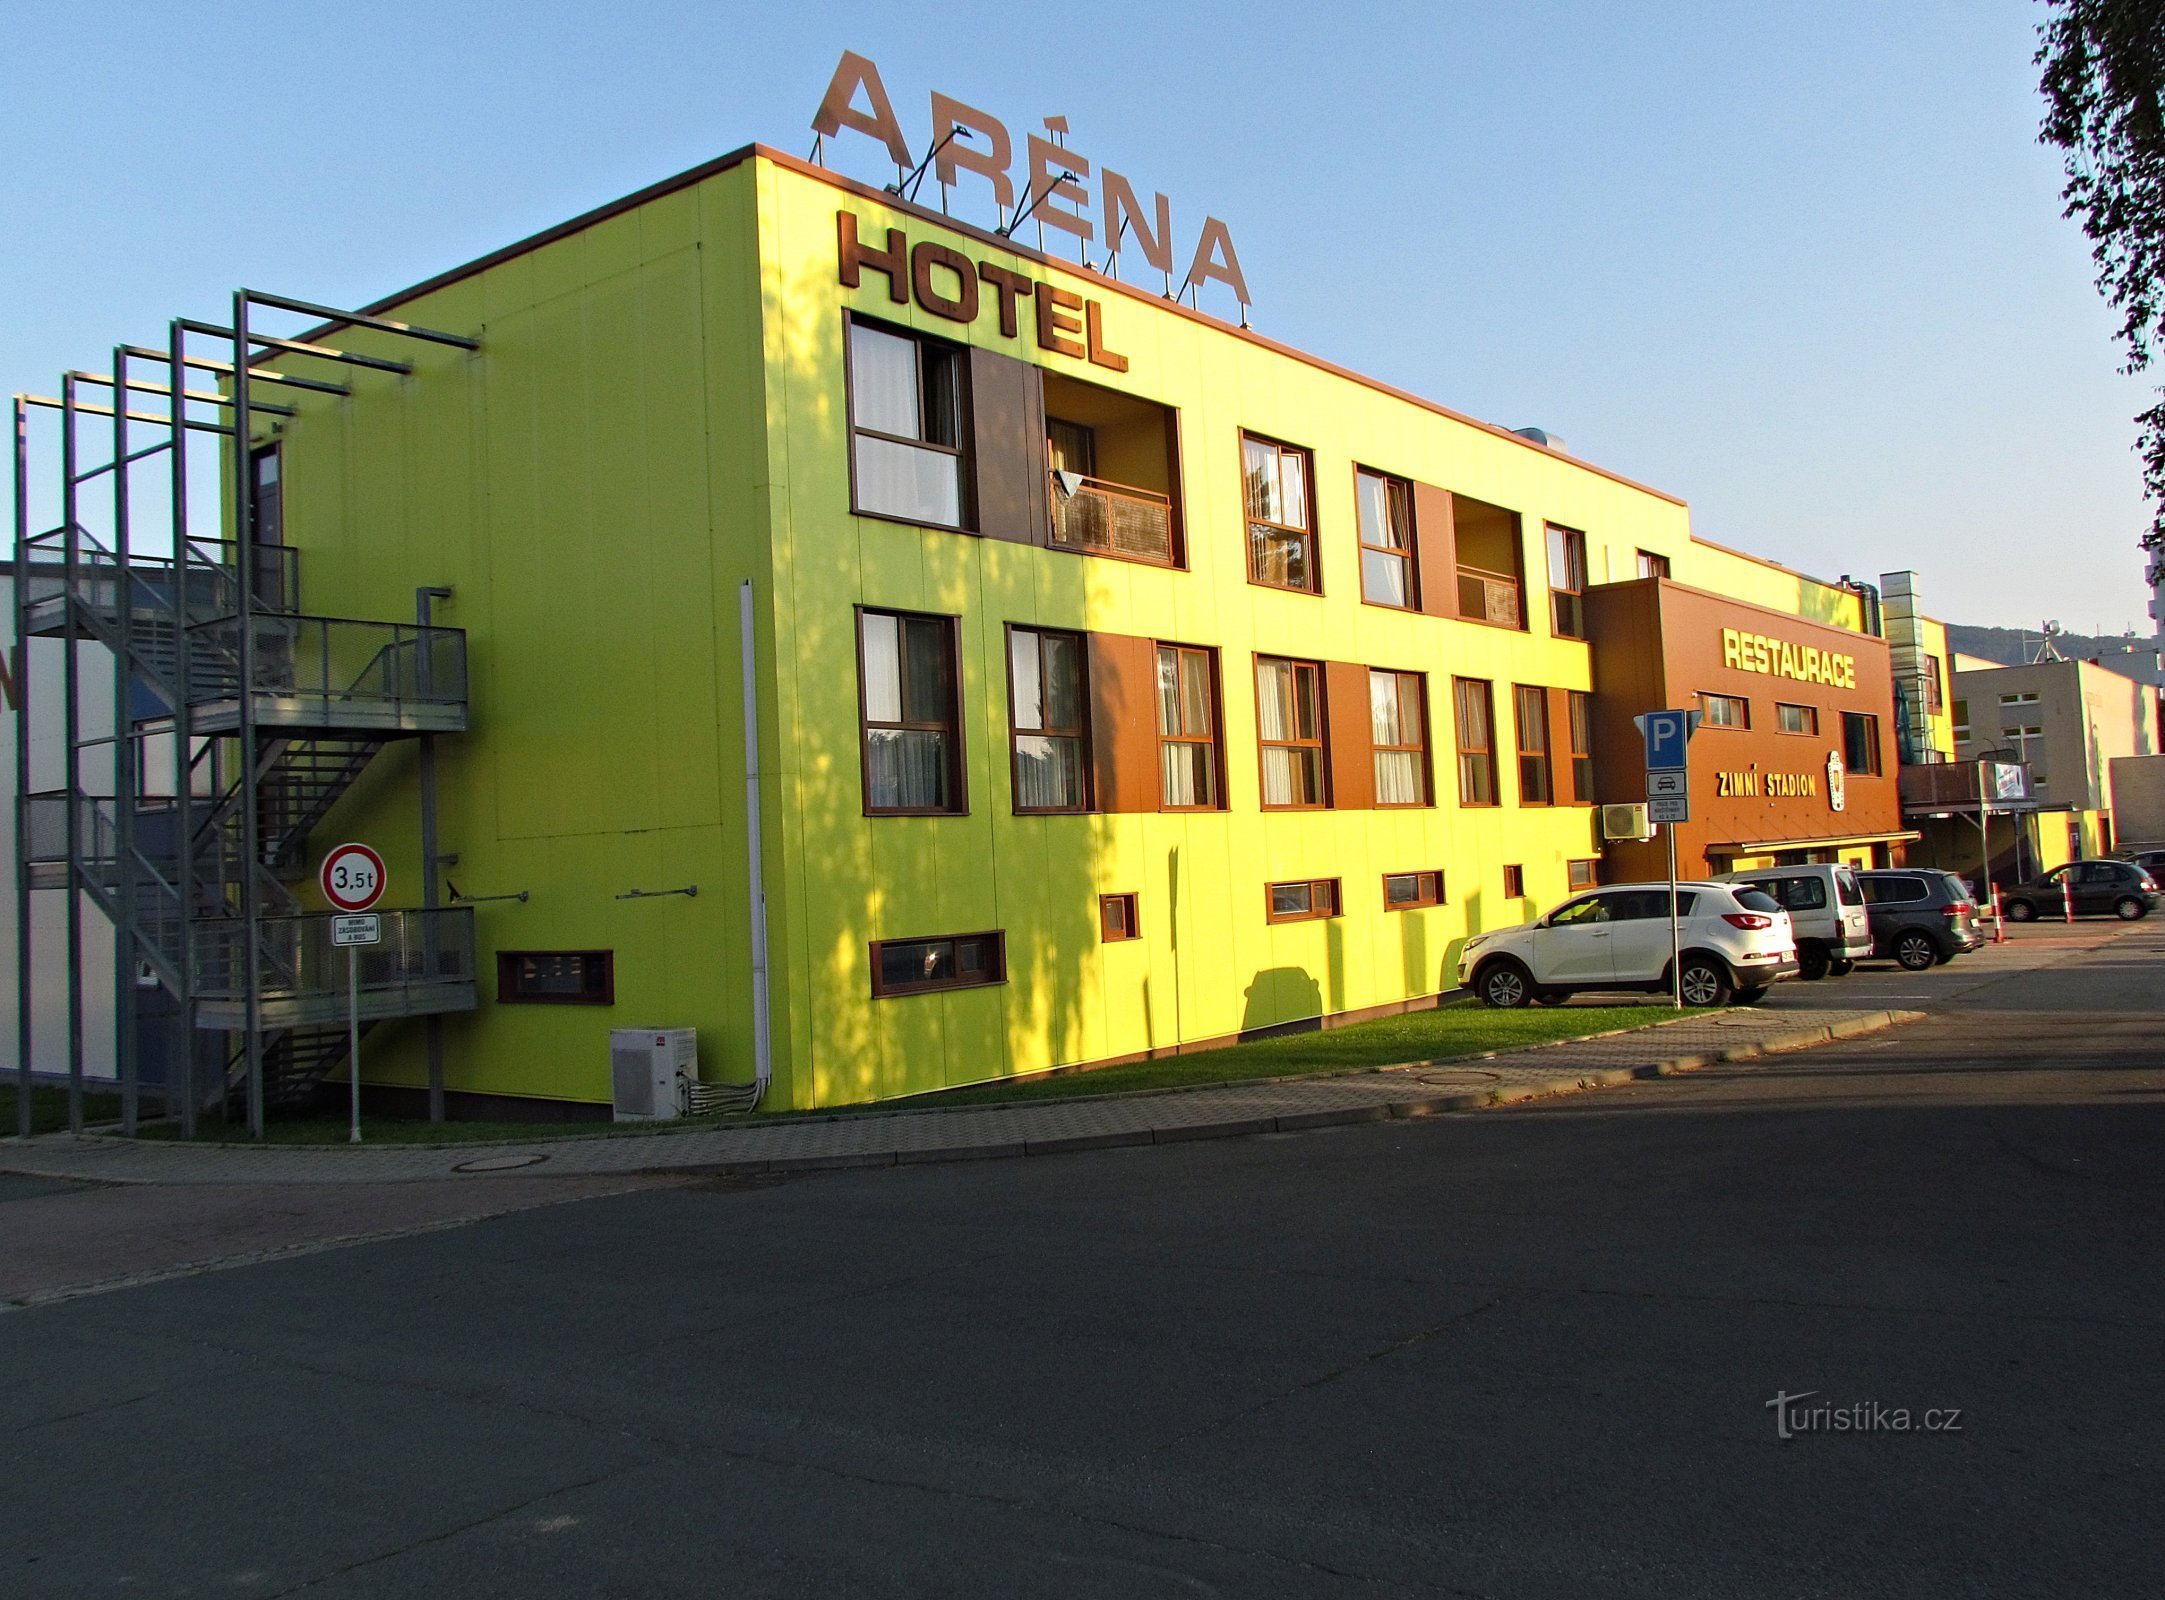 Brumovsk hotel and restaurant Aréna